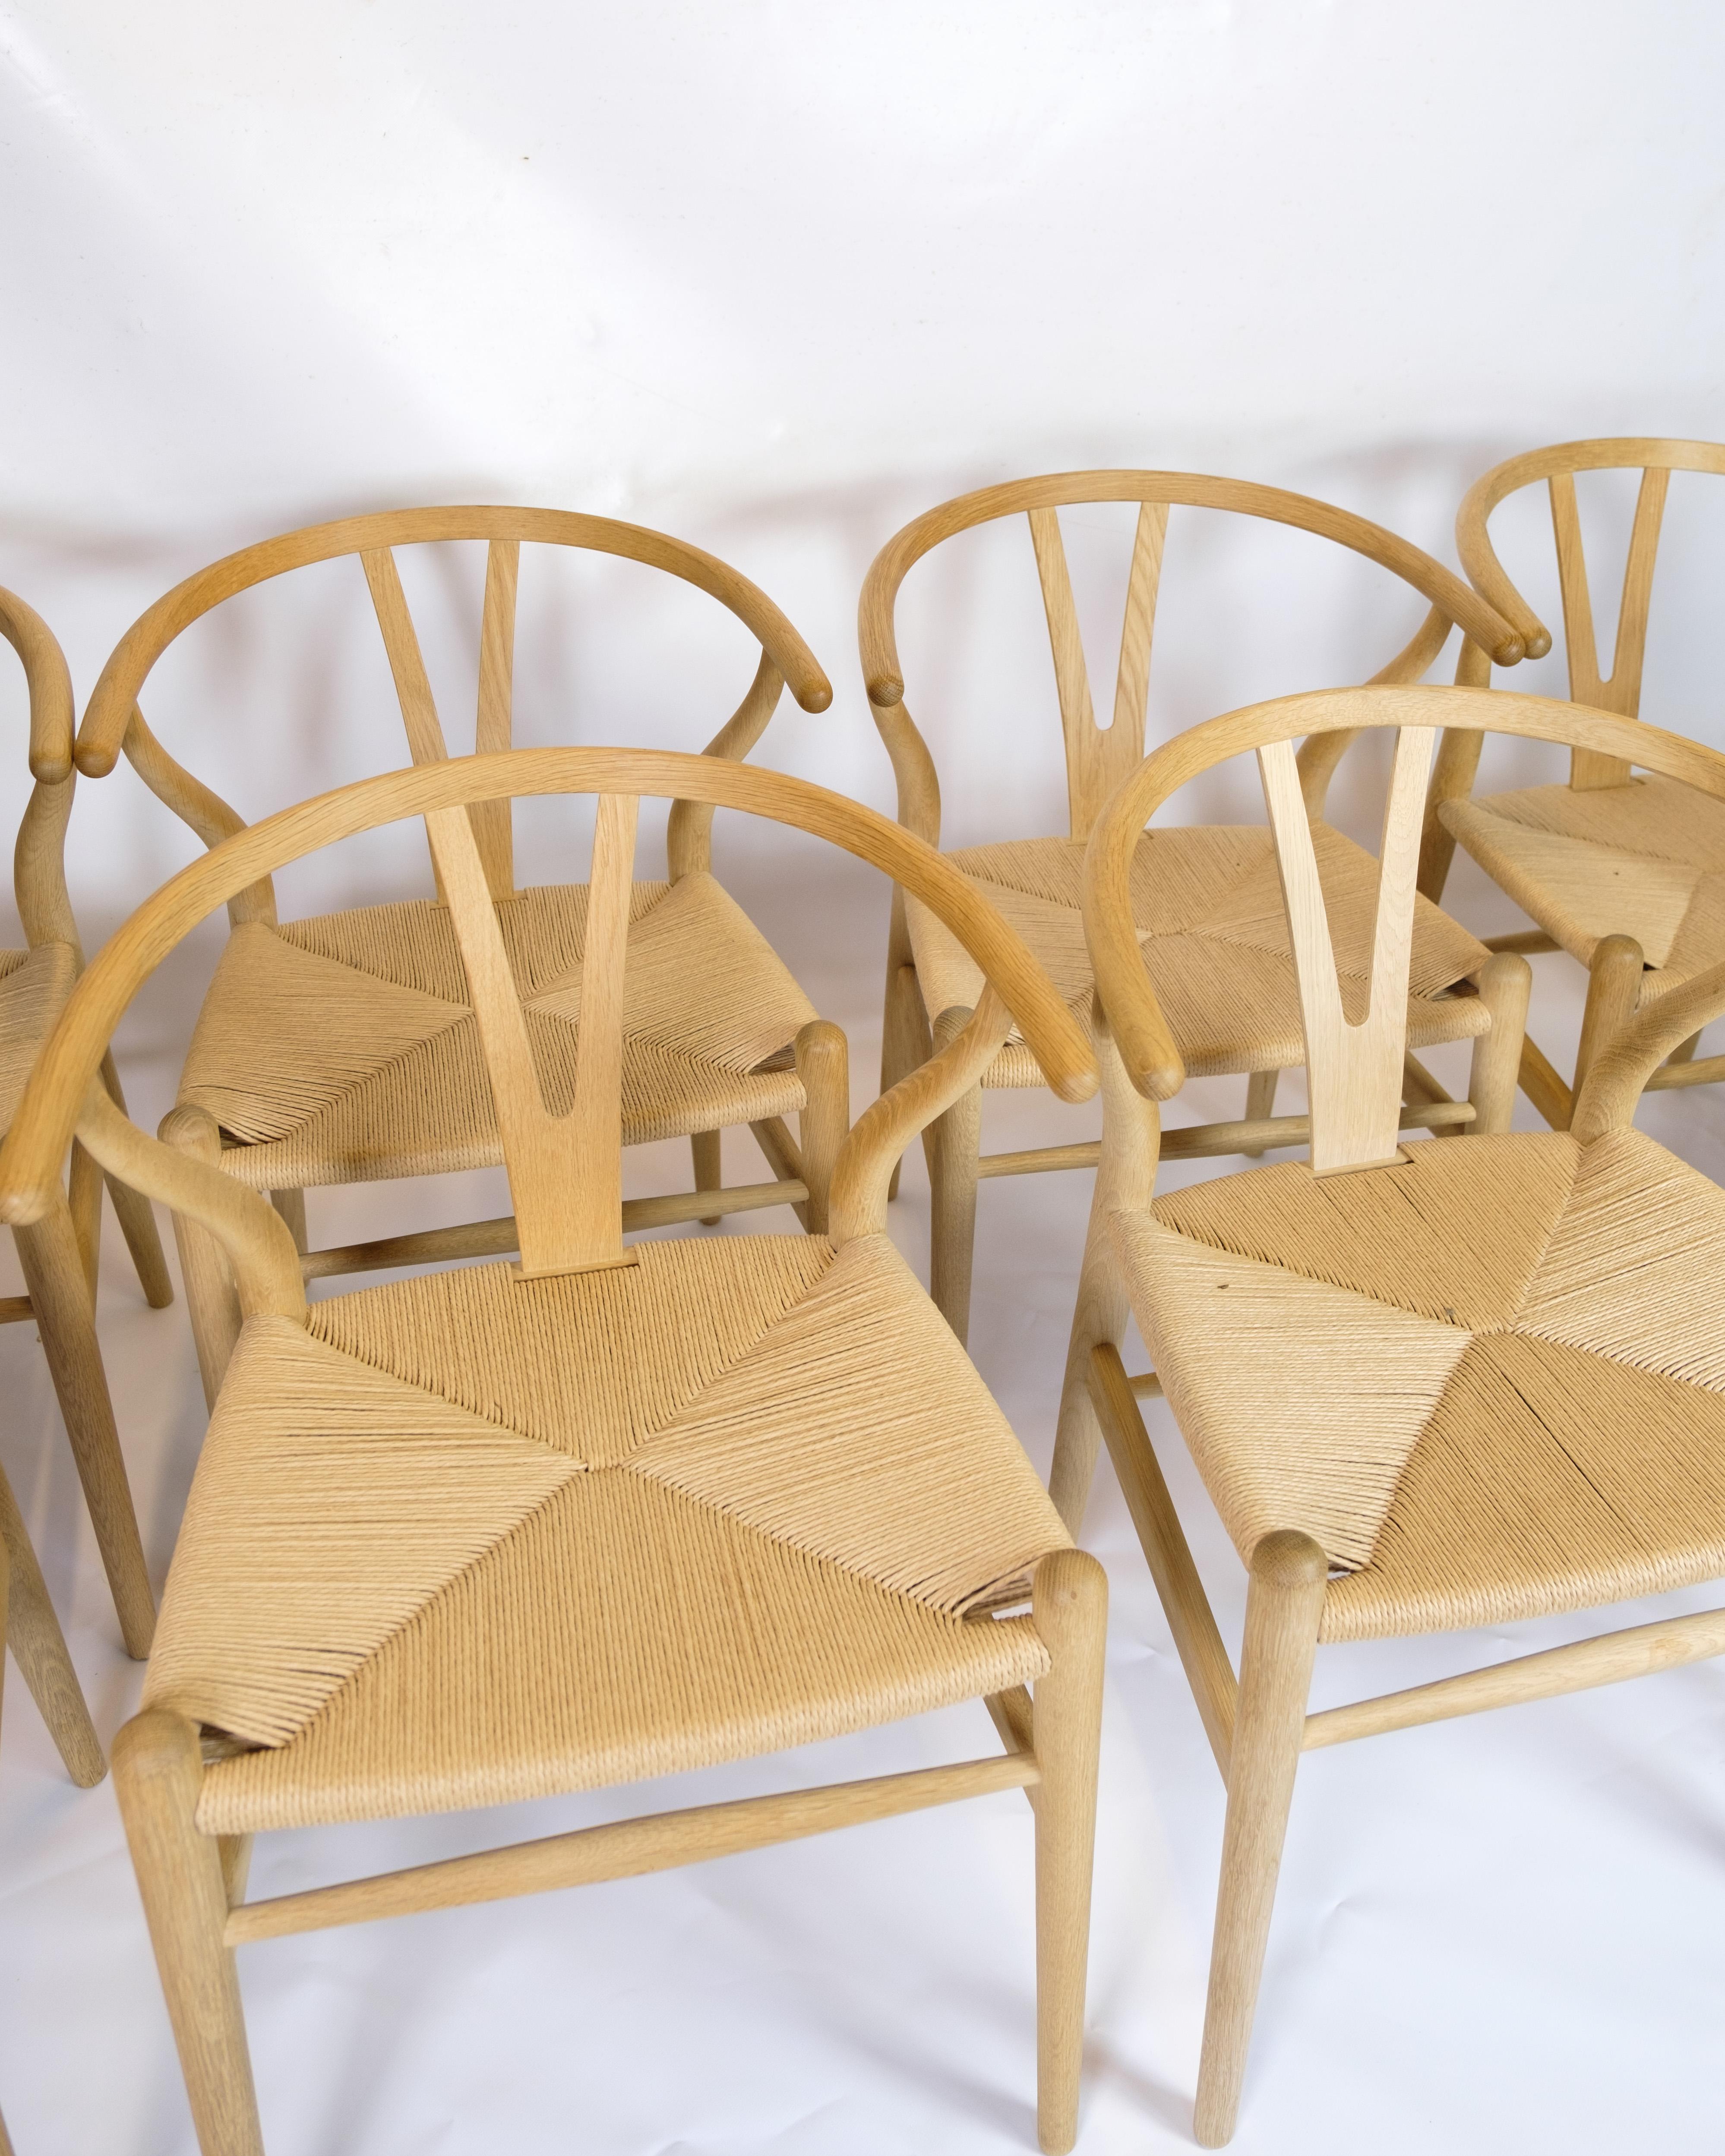 Das Set aus vier Y-Stühlen, Modell CH24, ist ein ikonisches Design des berühmten dänischen Architekten und Möbeldesigners Hans J. Wegner aus dem Jahr 1950. Die Stühle sind aus Eichenholz gefertigt, was ihrem Aussehen eine natürliche Wärme und